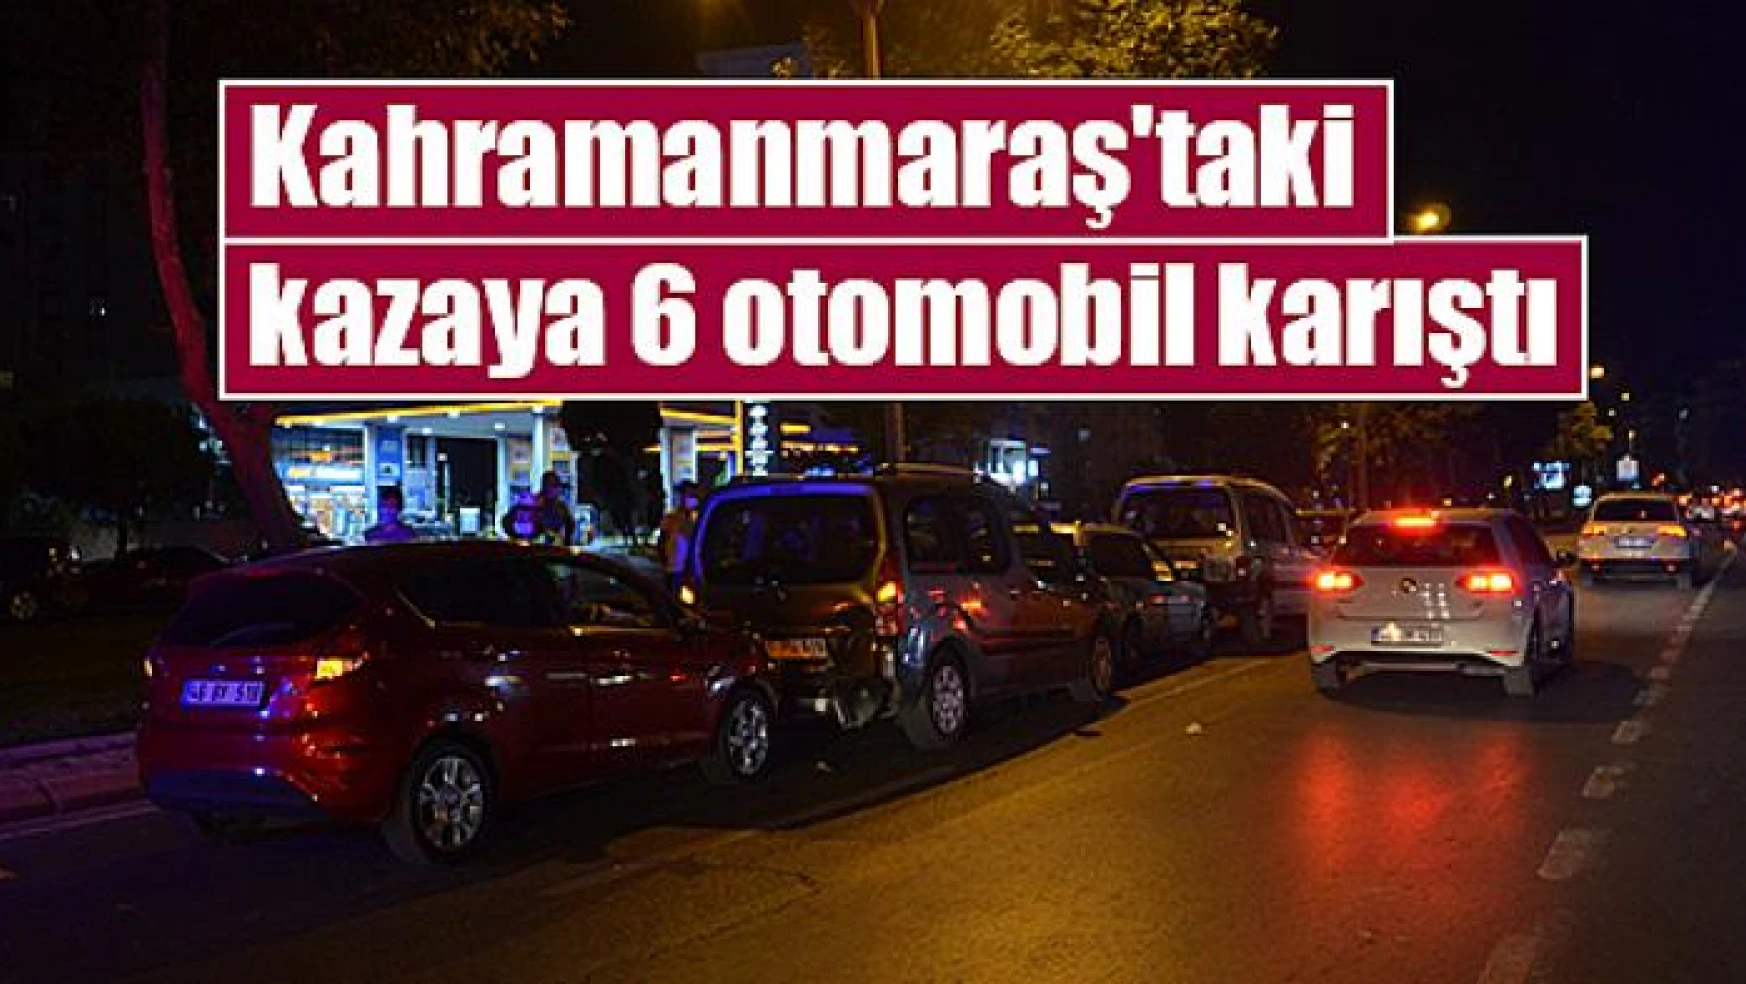 Kahramanmaraş'taki kazaya 6 otomobil karıştı